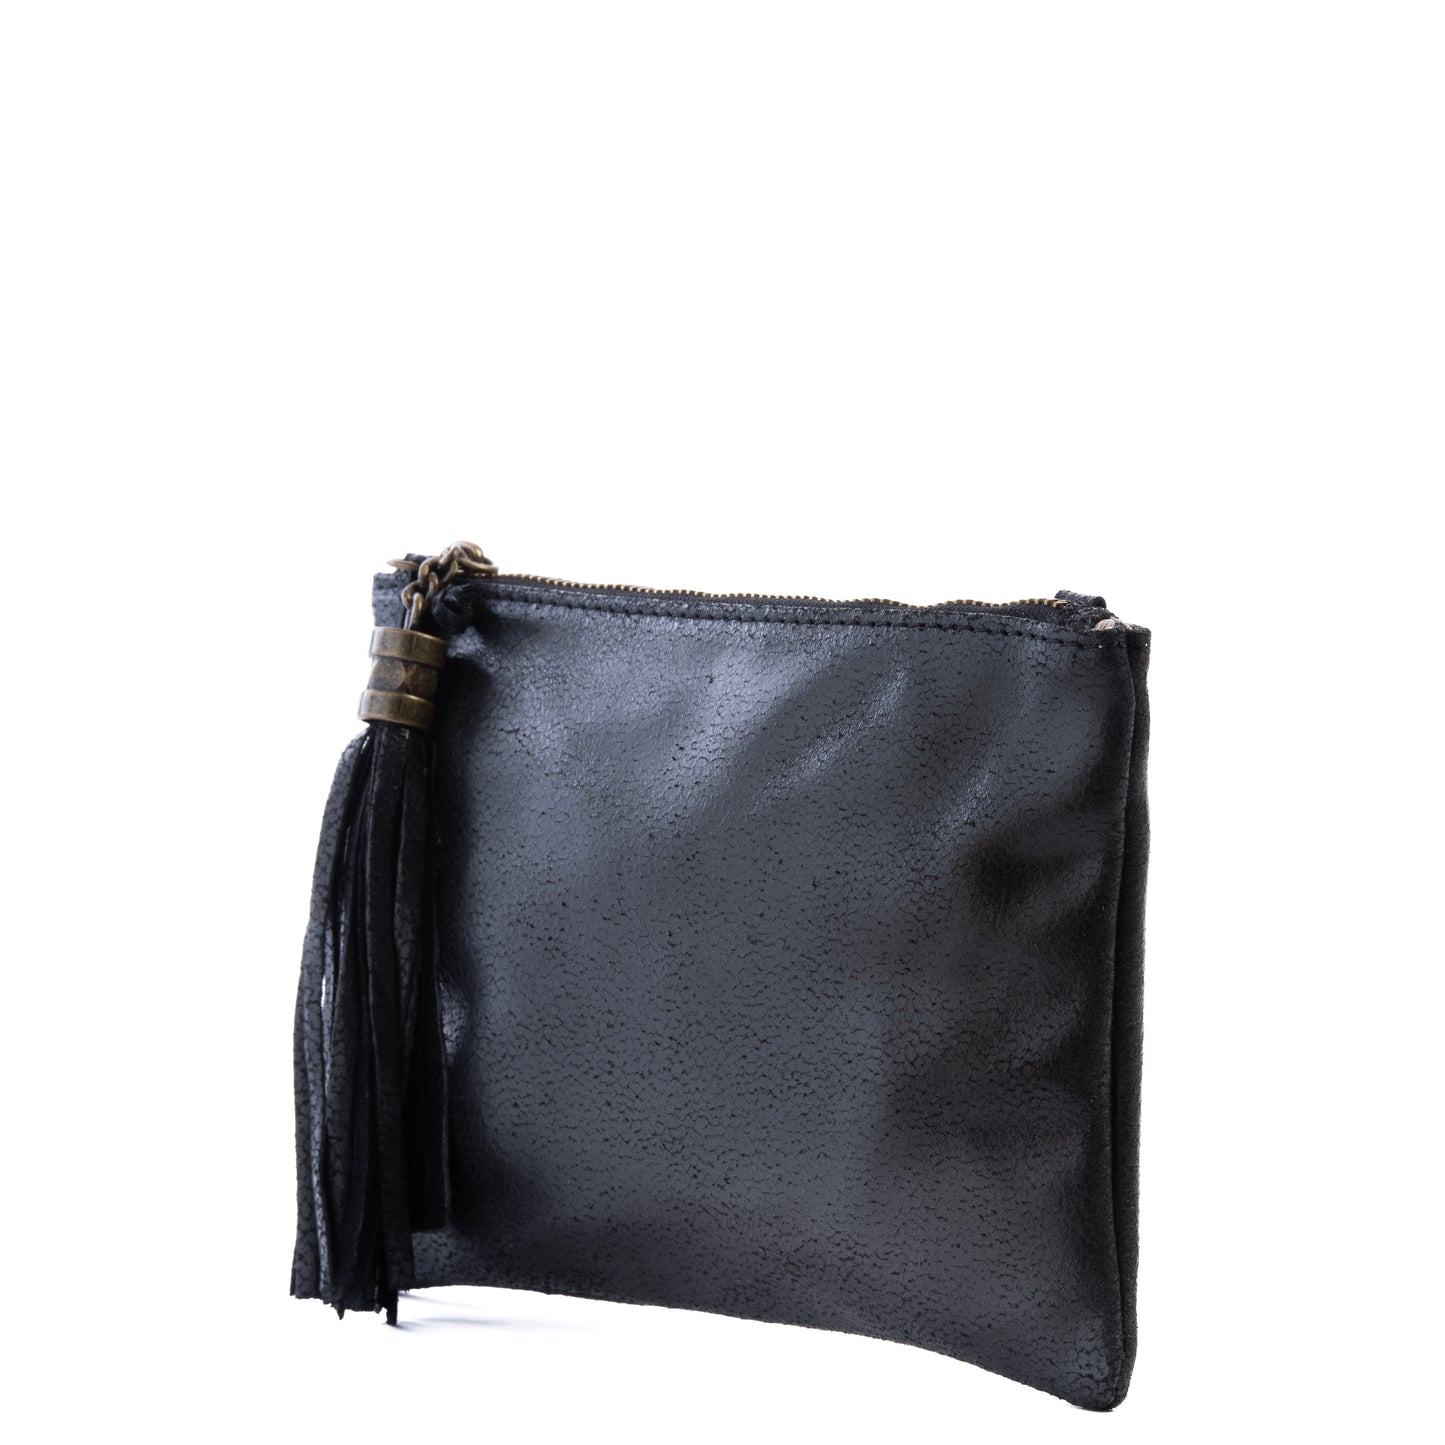 Black Real Leather Tassel Crossbody Clutch Bag - Amilu